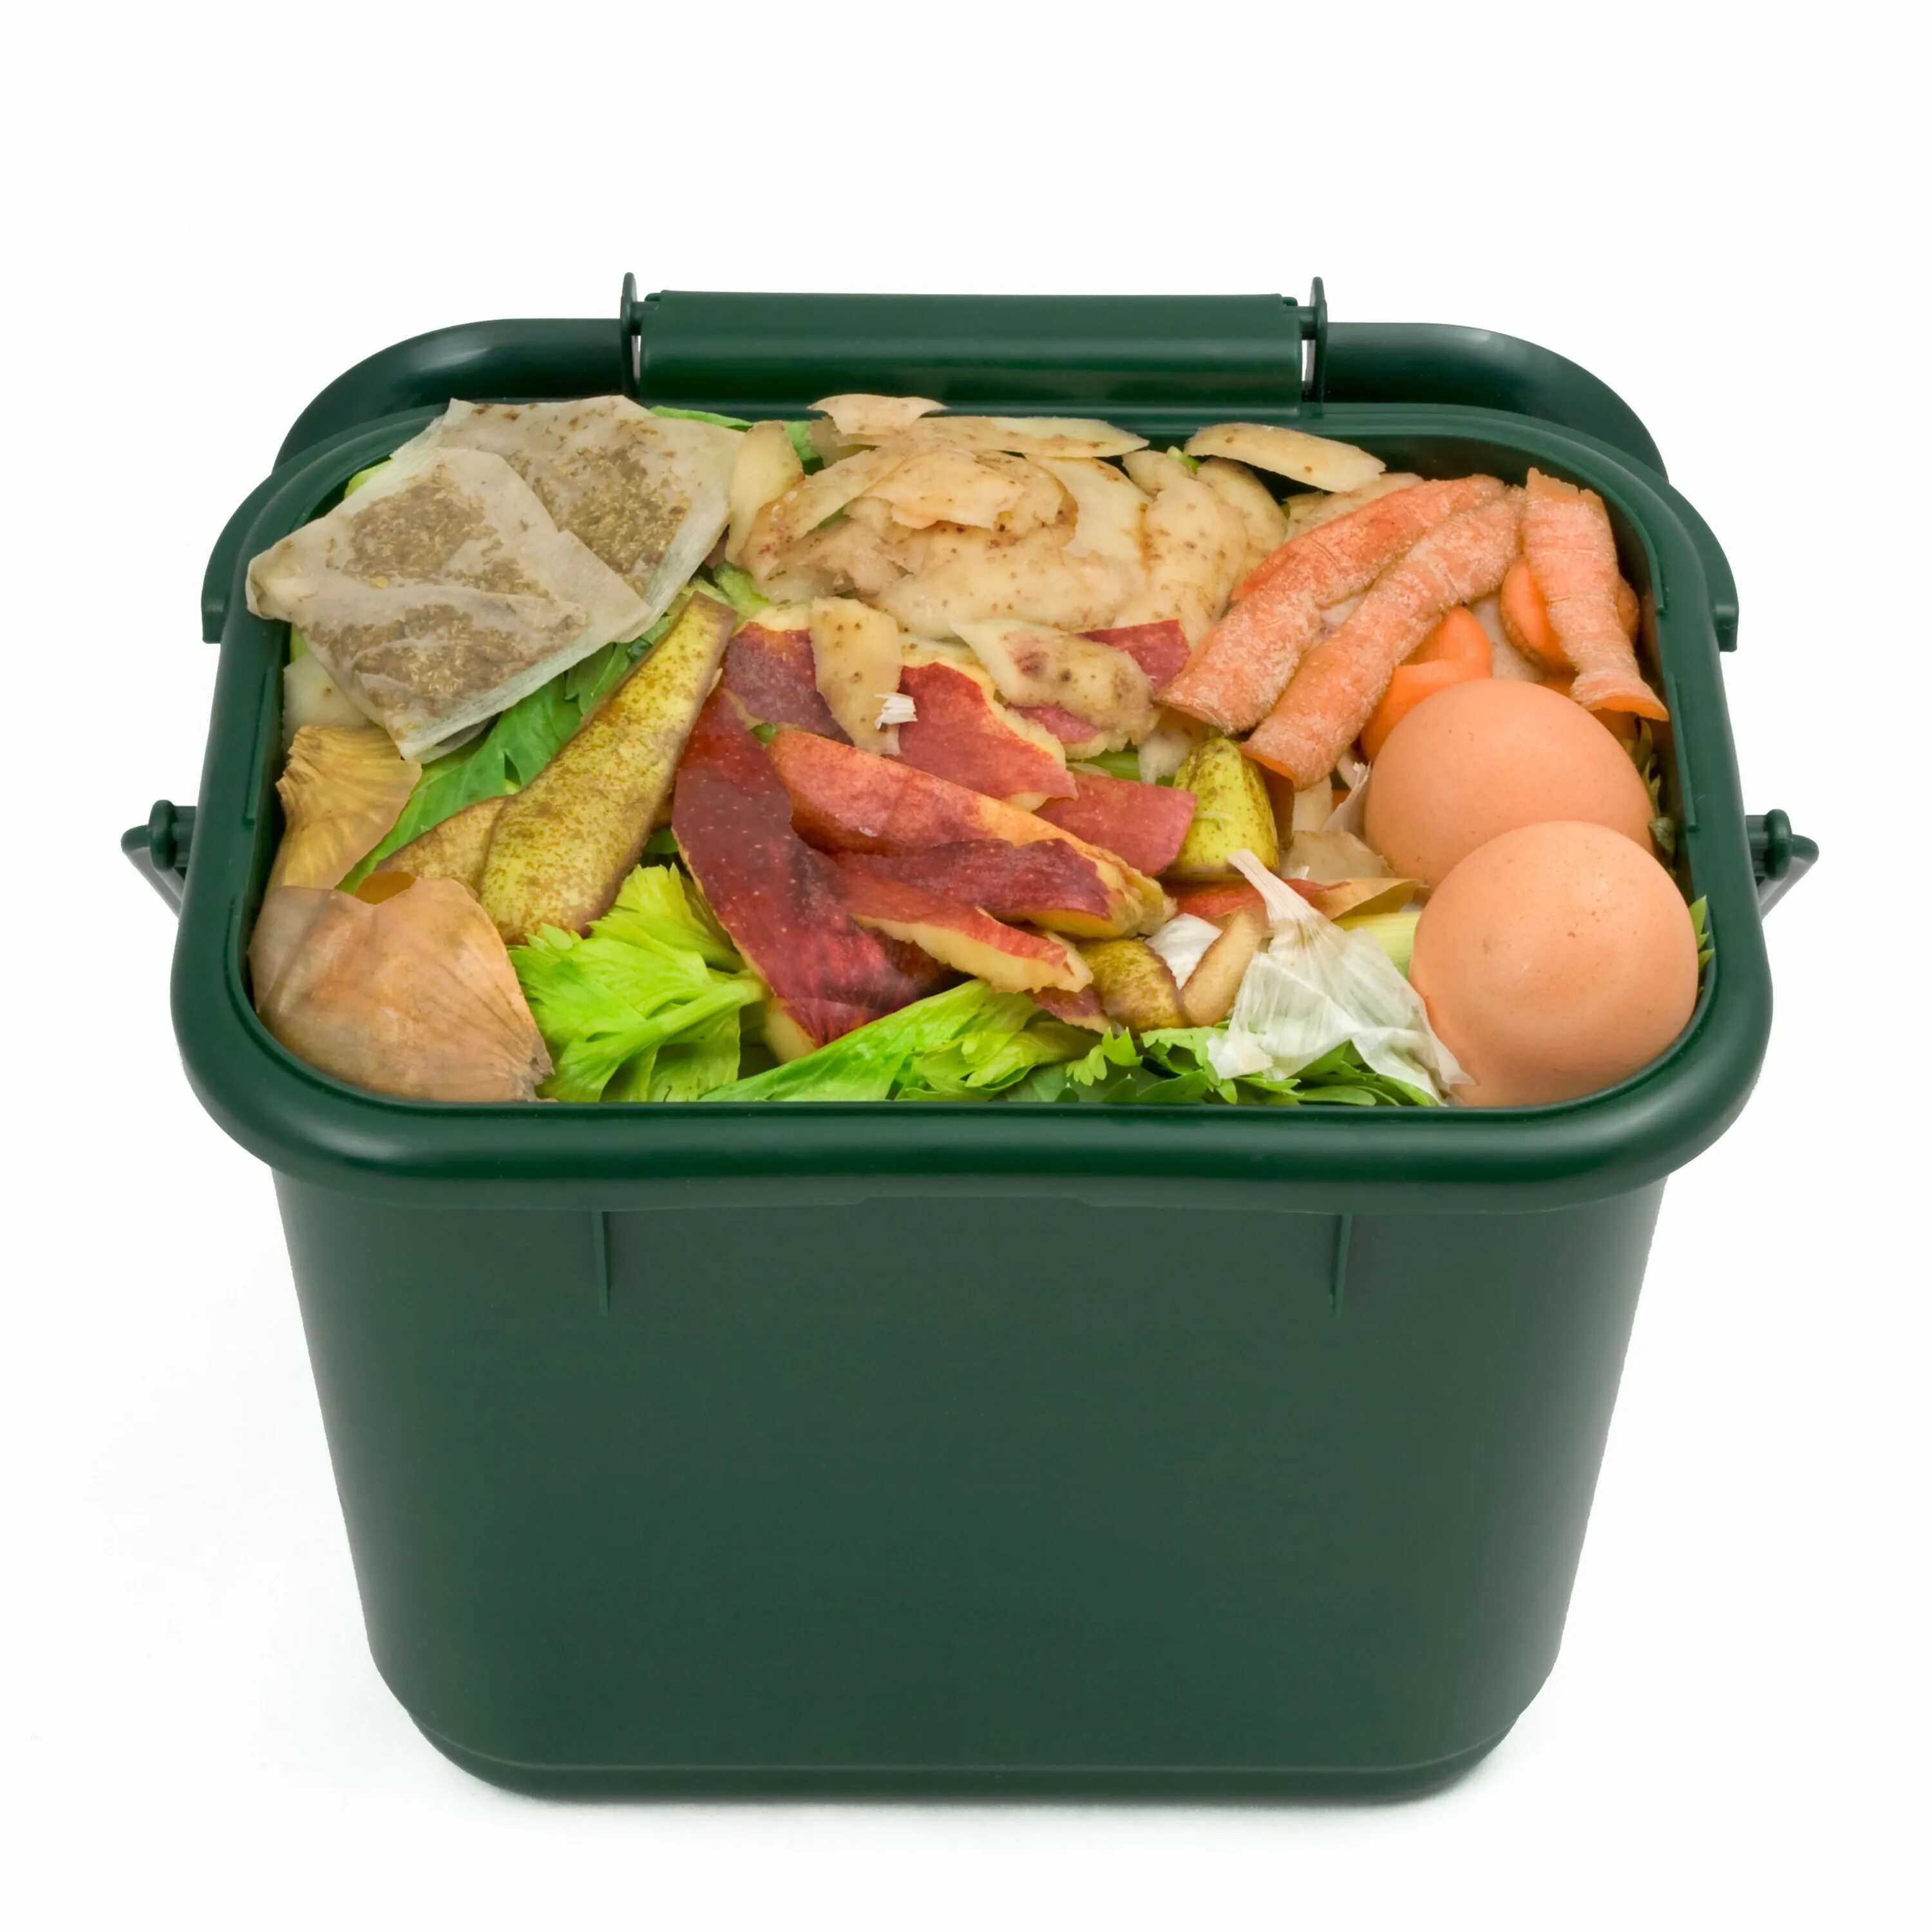 Пищевые отходы кухонь и организаций. Пищевые отходы. Пищевые отходы в ведре. Для пищевых отходов. Твердые пищевые отходы.